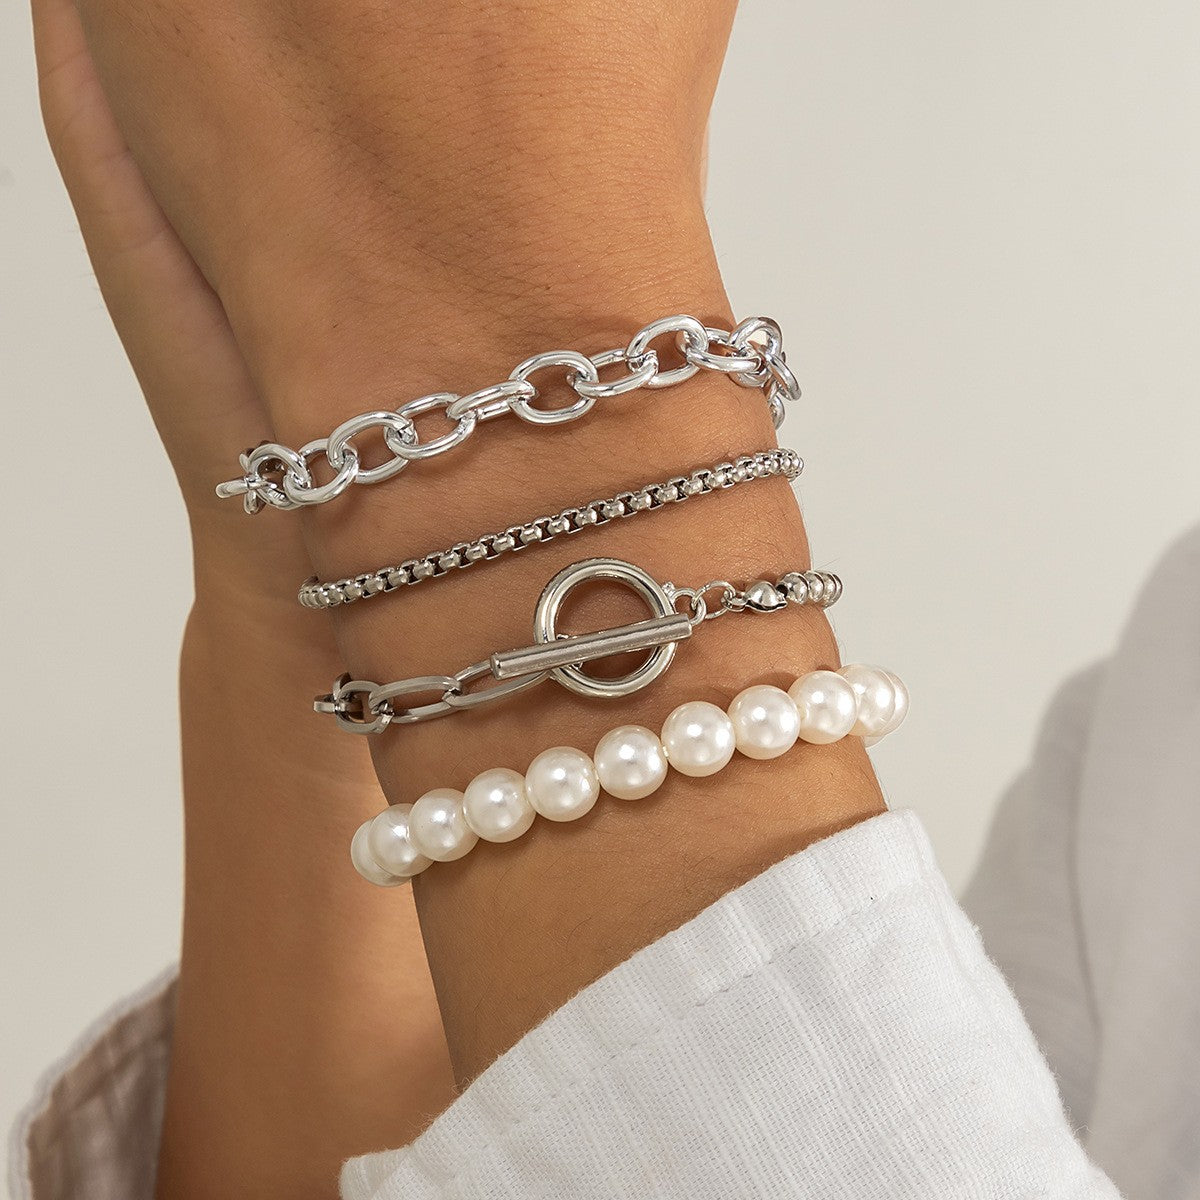 Bohemian Fashion Hand Jewelry Multilayer Chain Bracelets - Niki Ice Jewelry 